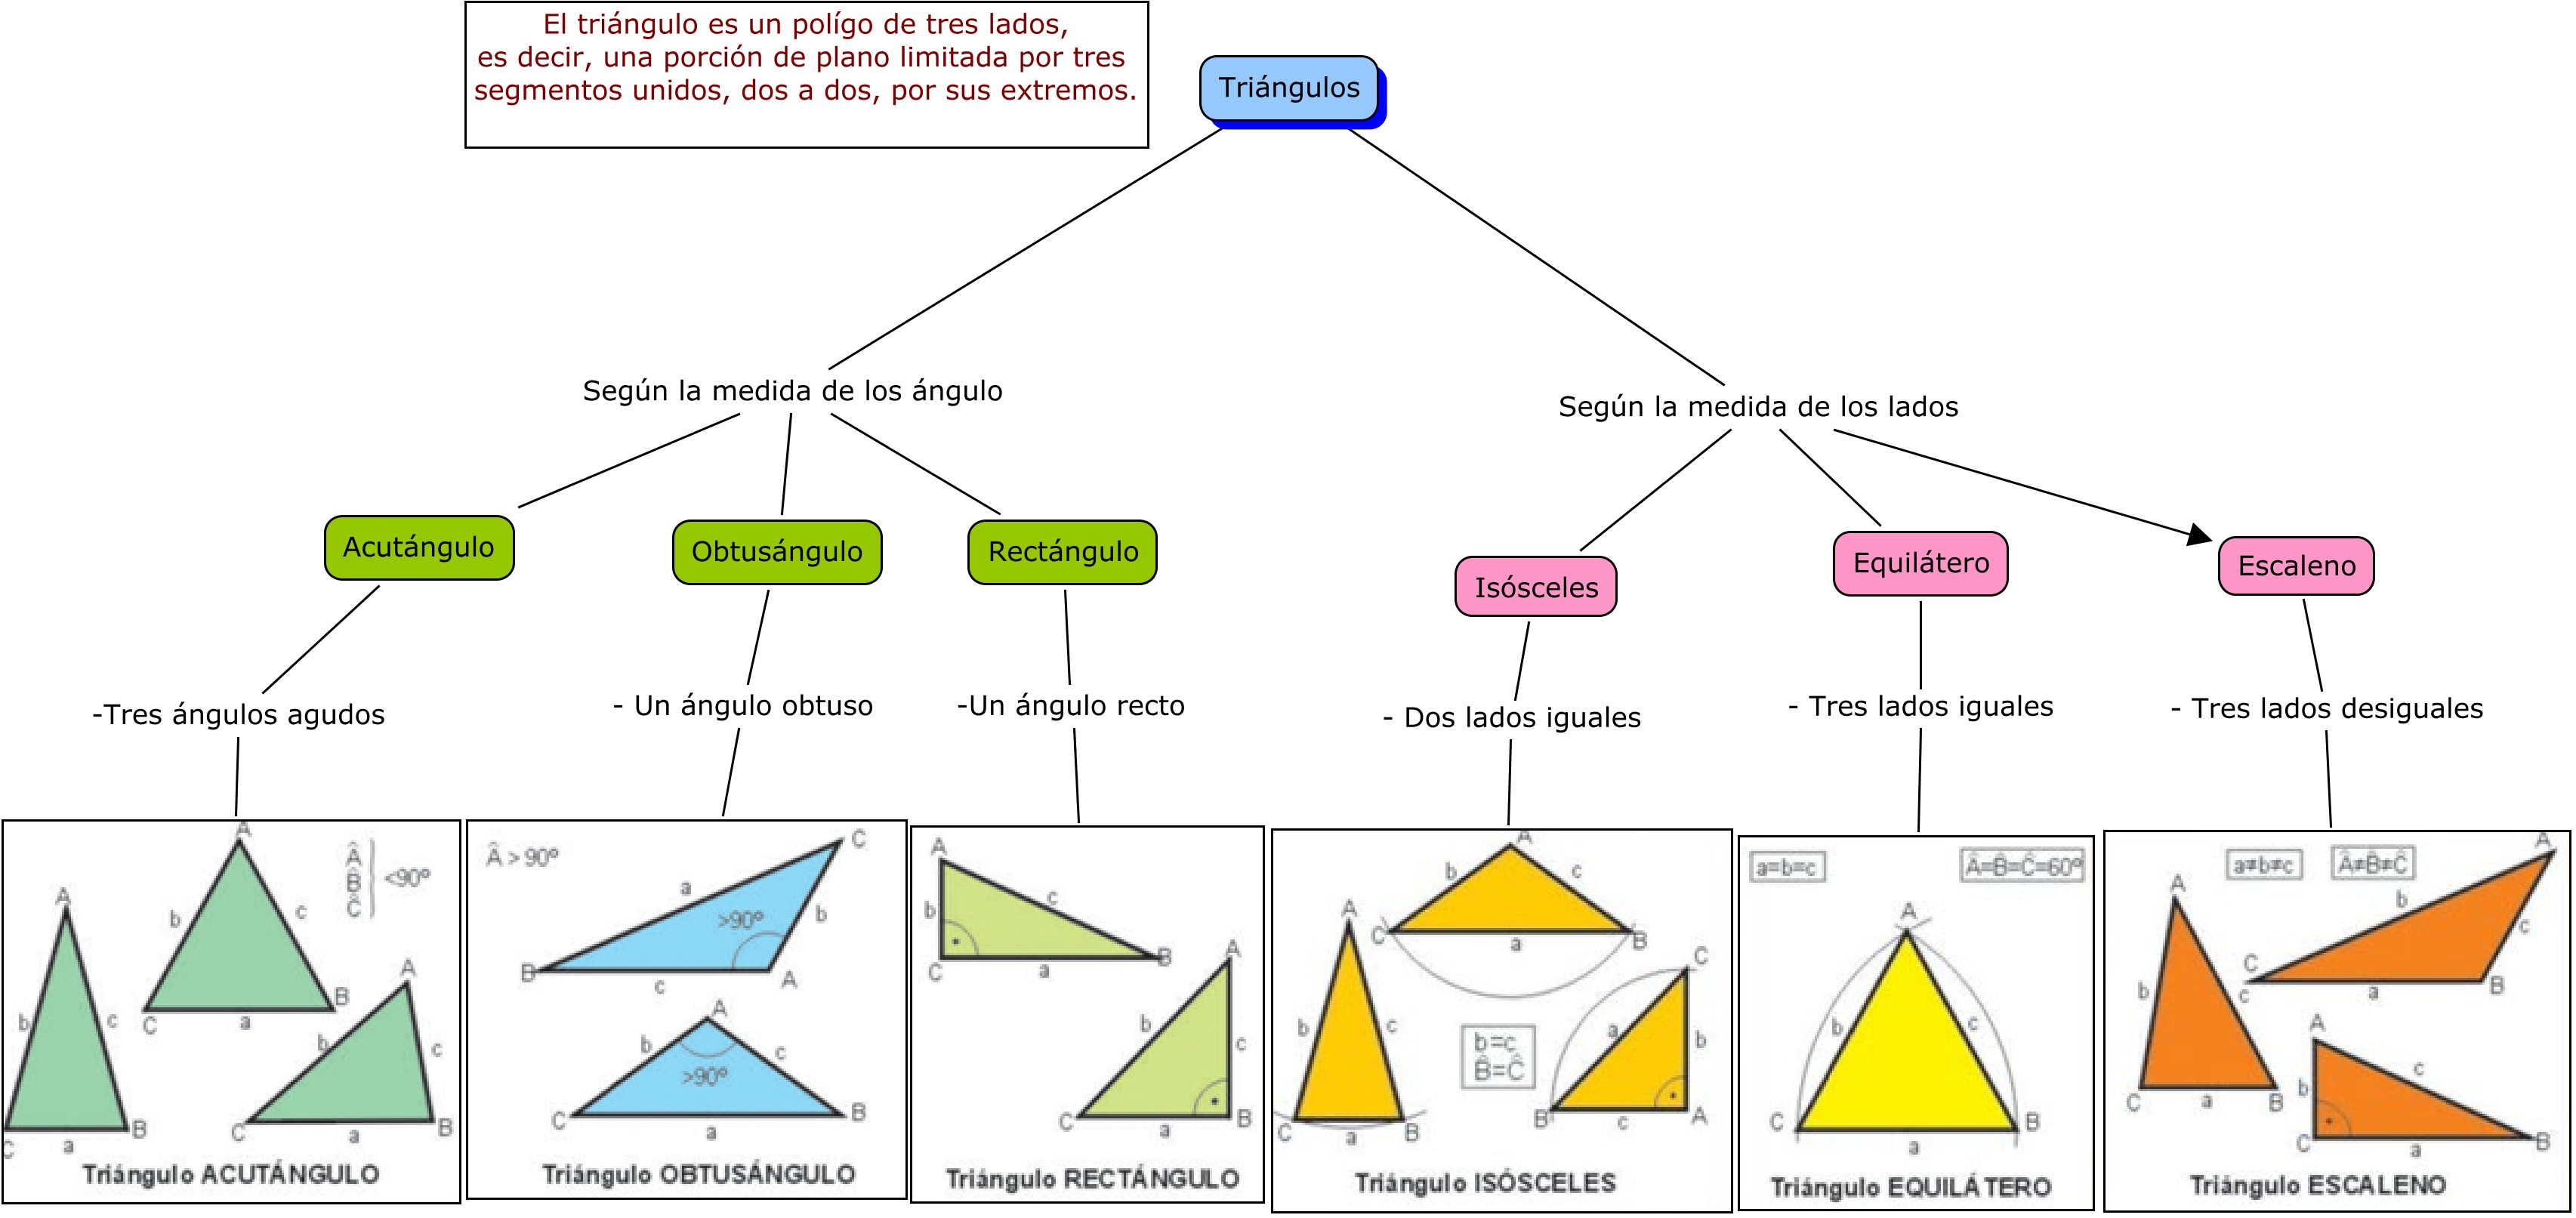 Clasificación de los triángulos